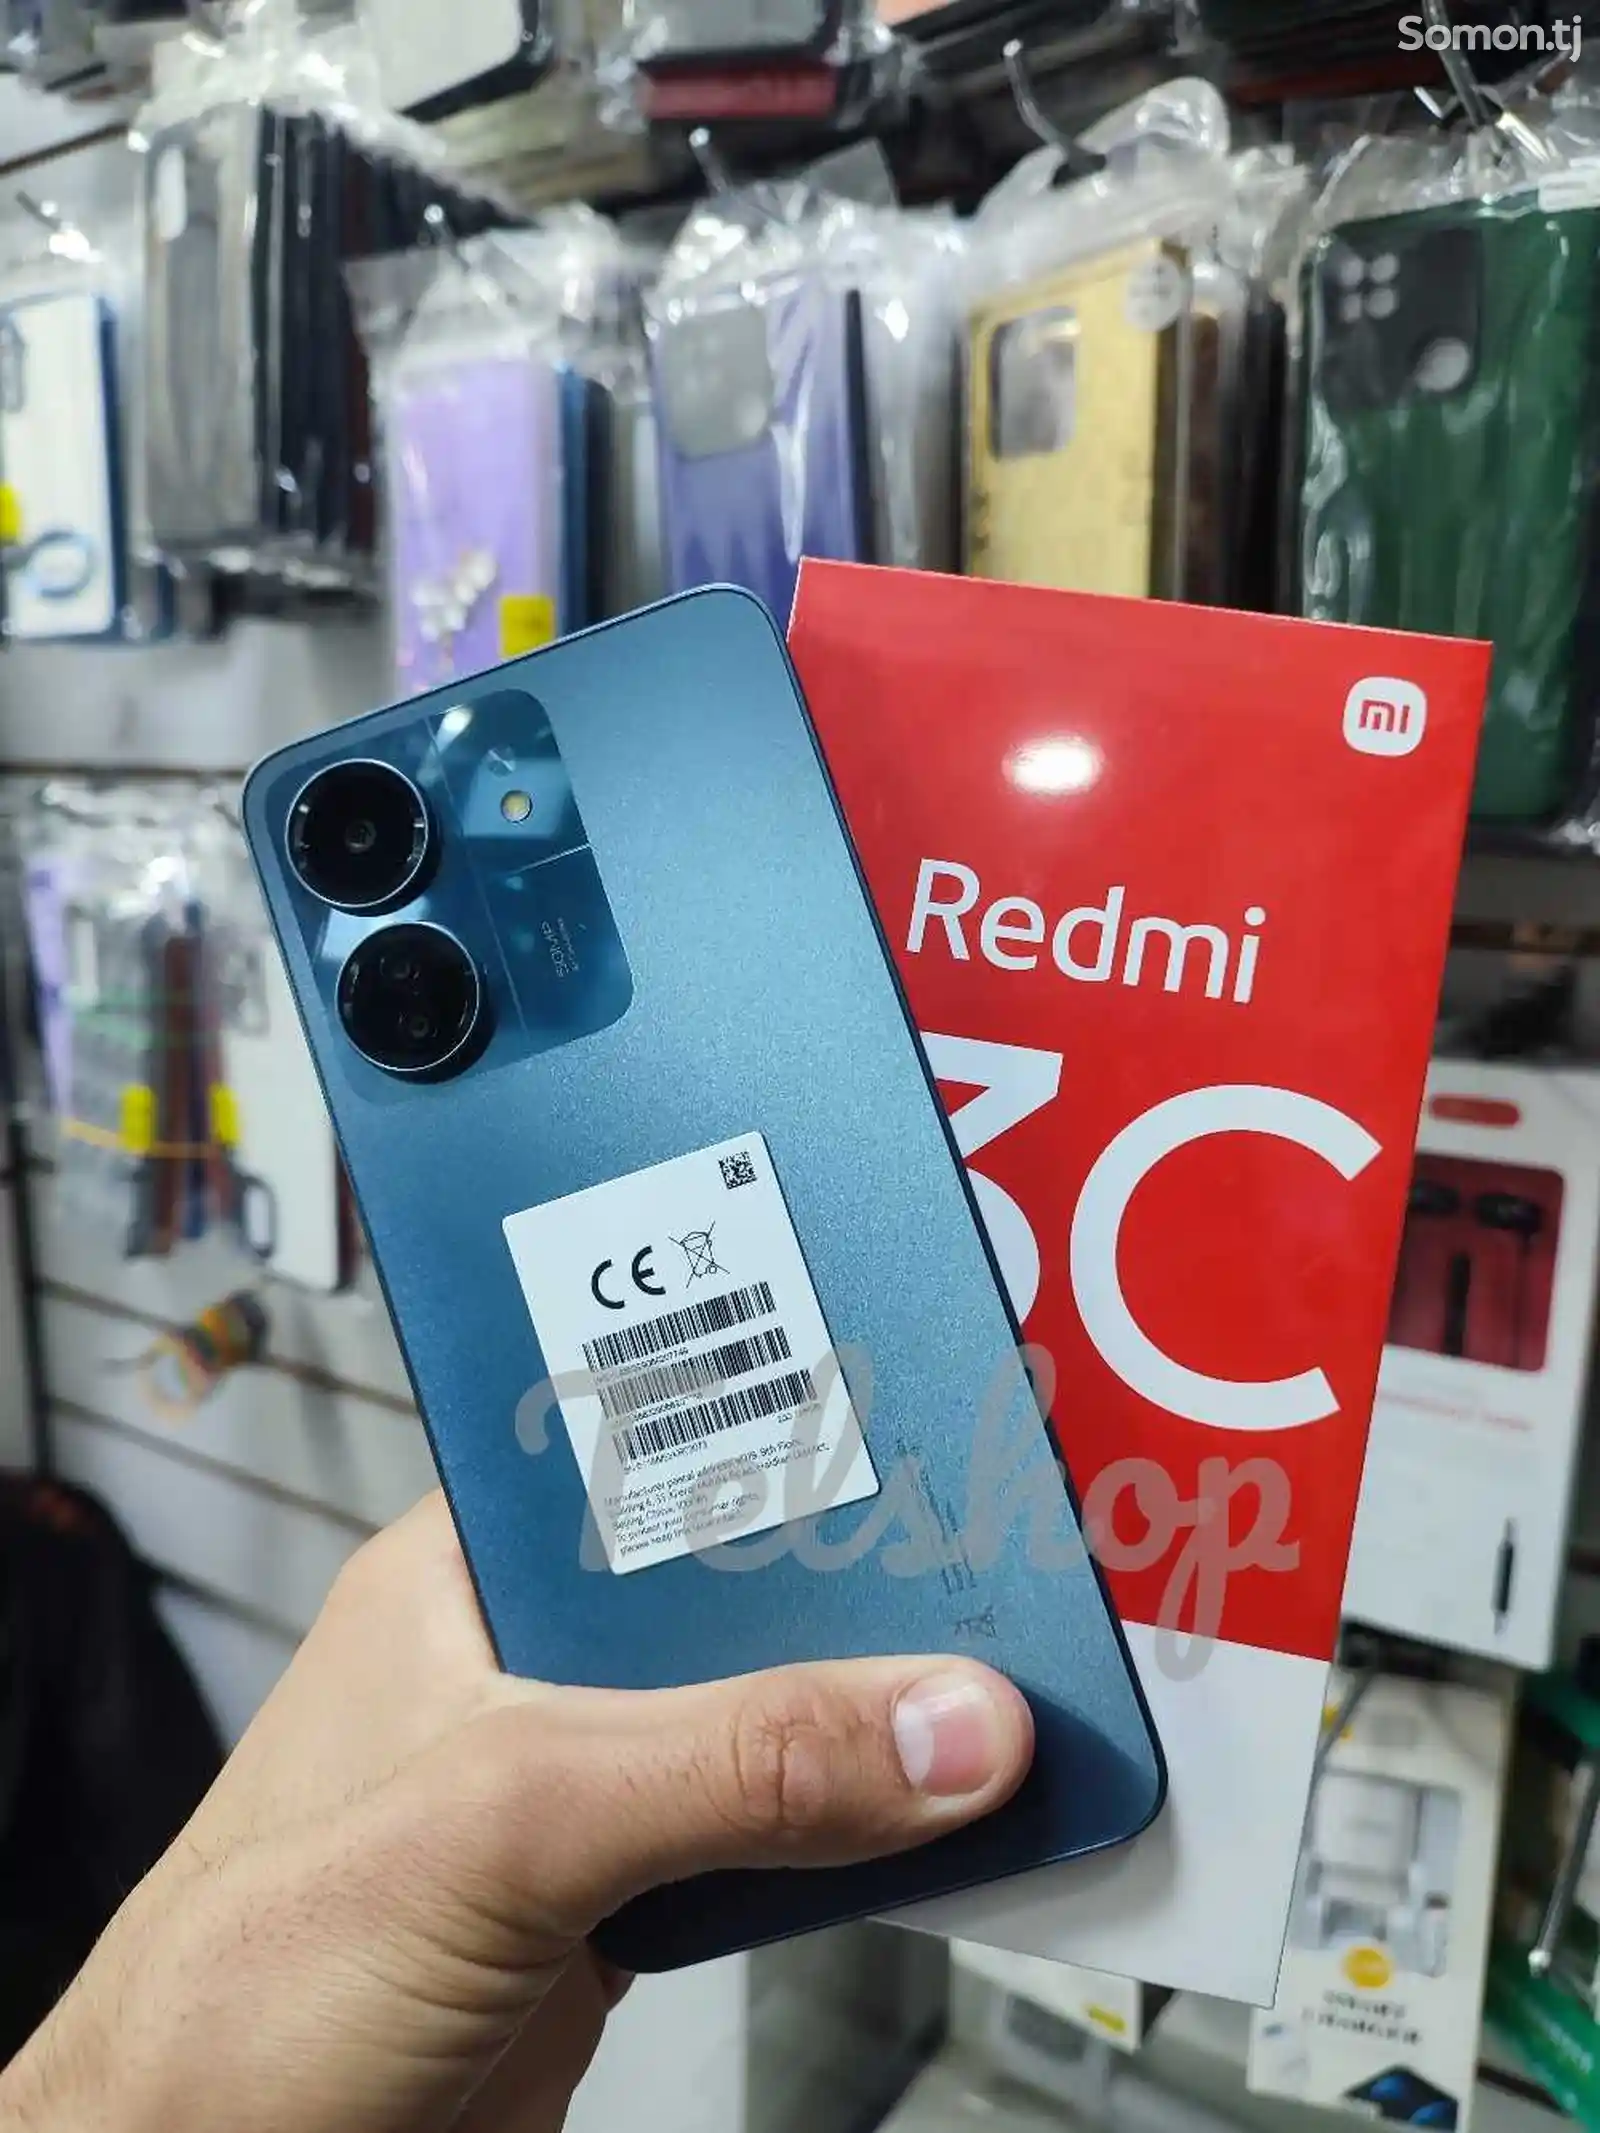 Xiaomi Redmi 13C 128Gb-8